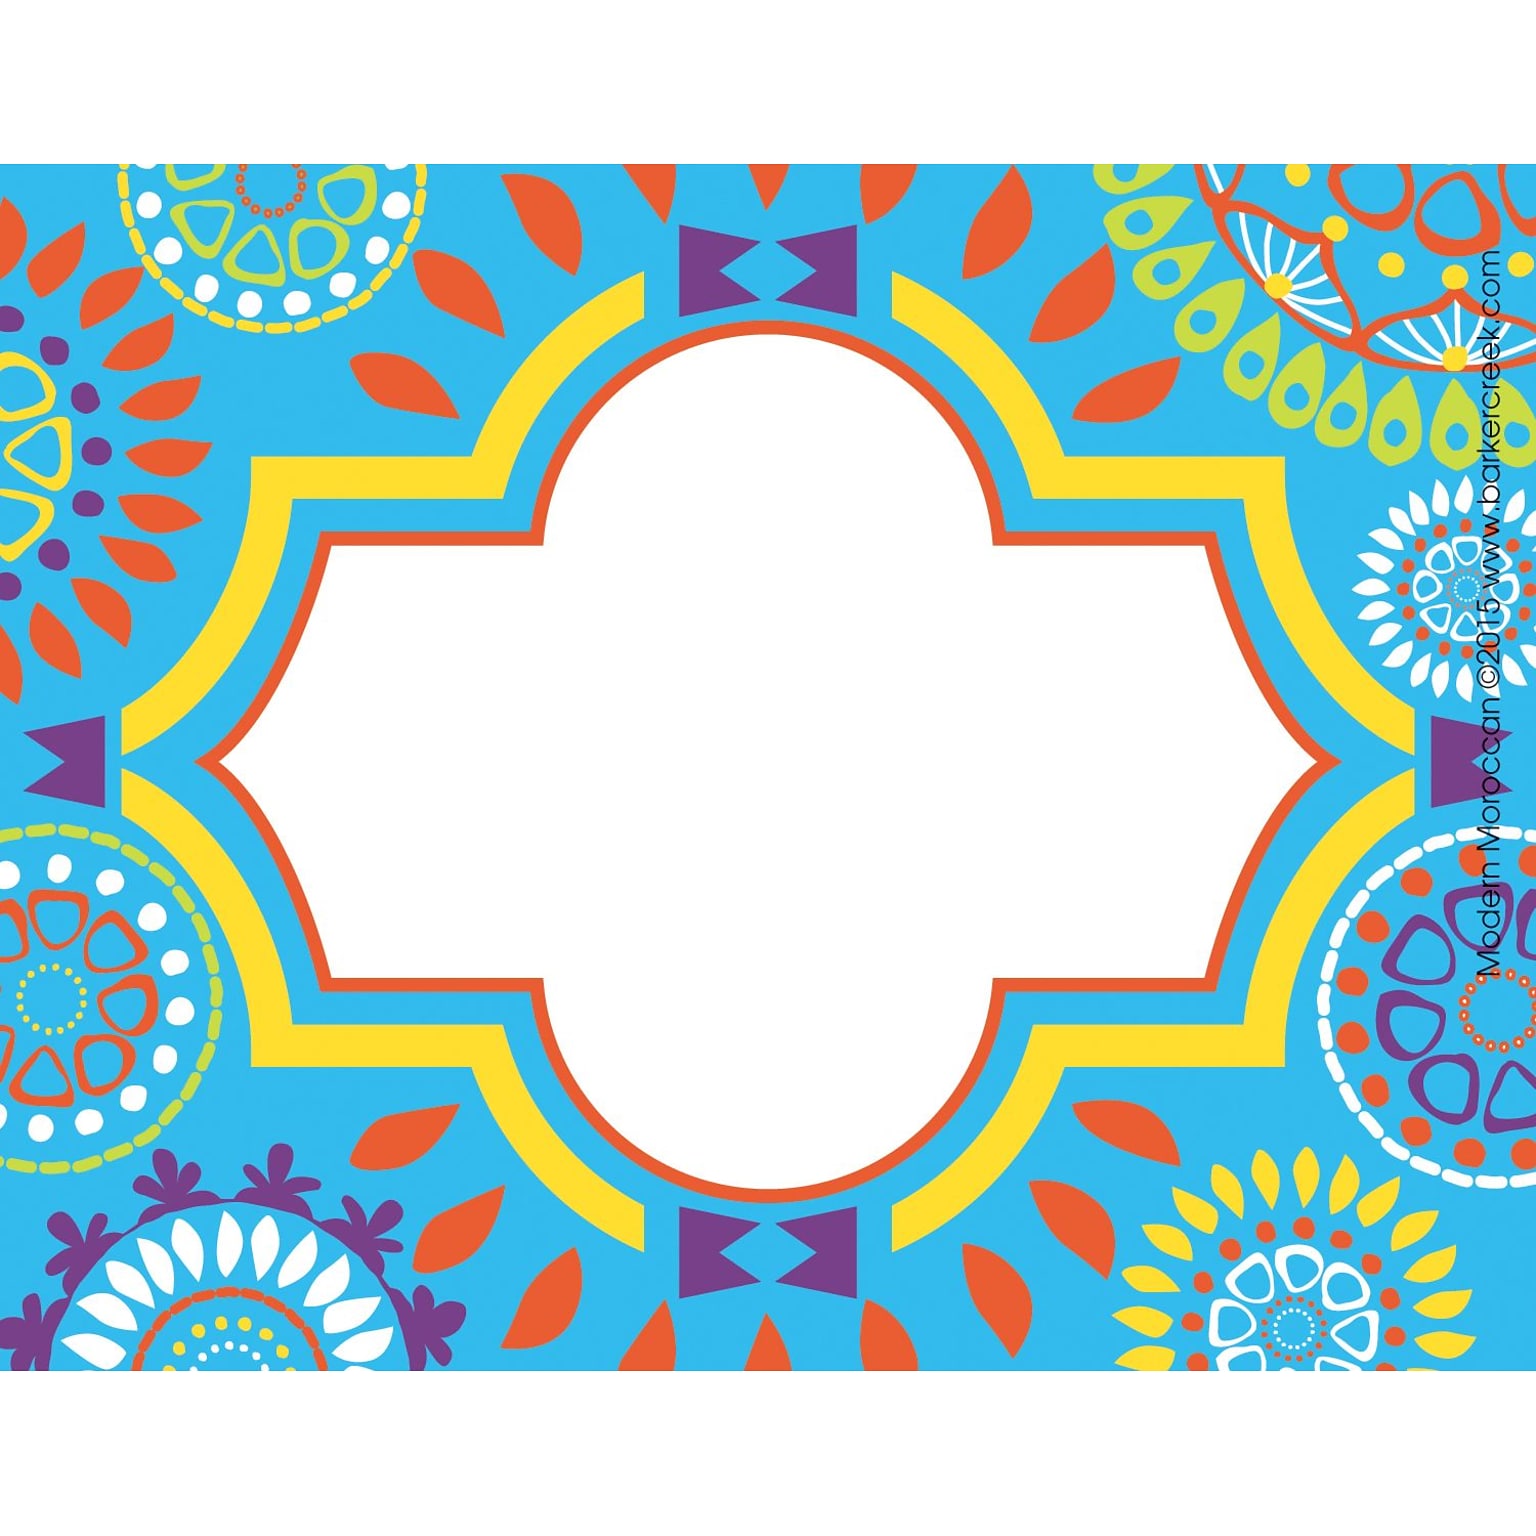 Barker Creek Moroccan Name Badges & Self-Adhesive Labels, 3-1/2 x 2-3/4, 5/Pack